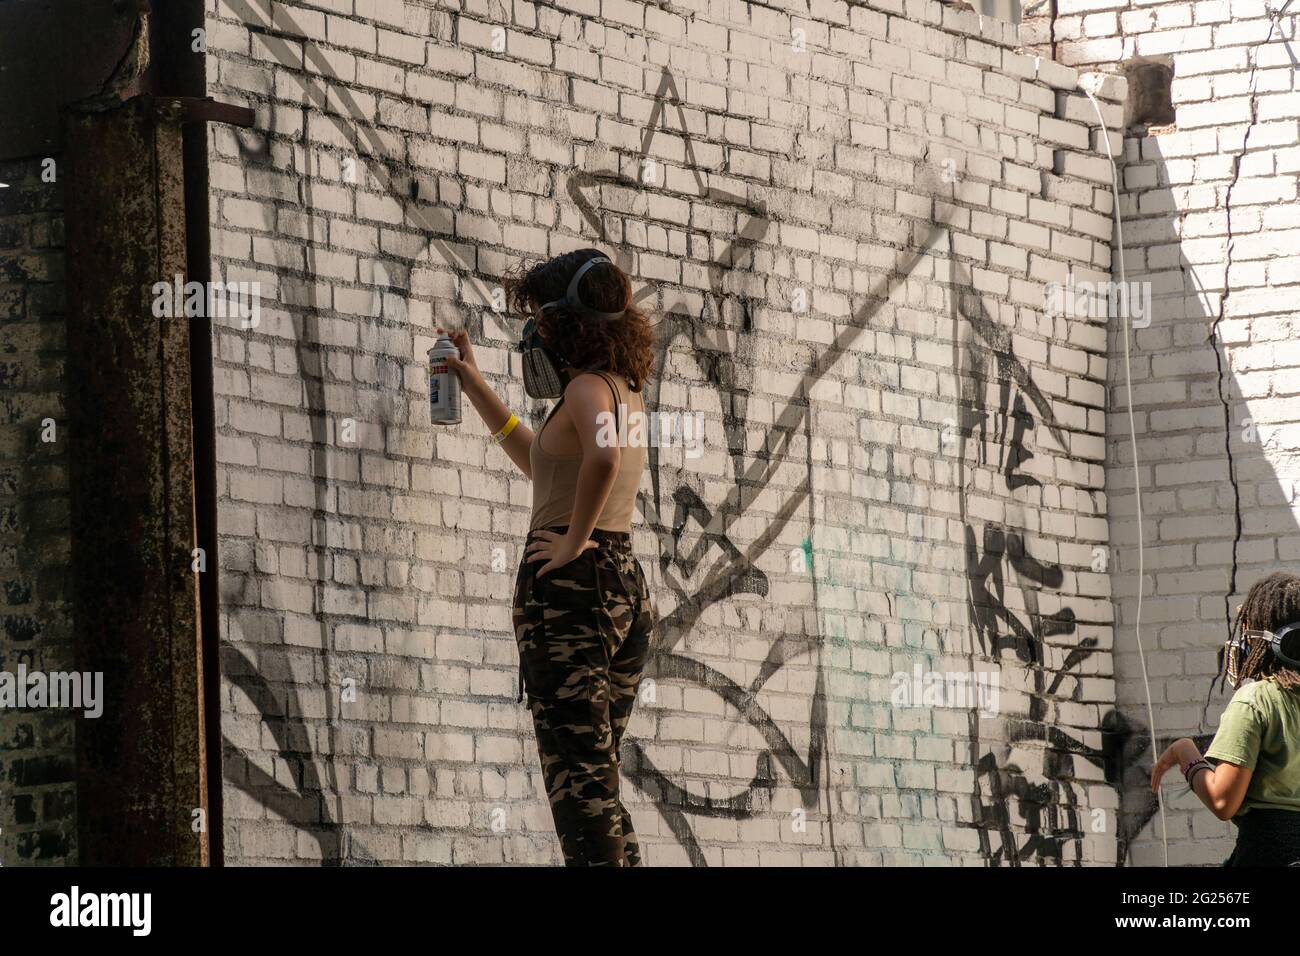 Hunderte strömen am Samstag, den 5. Juni 2021, zum Jersey City Mural Festival in den Hamilton Park in Jersey City, NJ. Musik und Partys brachten einiges mit, aber die wahre Attraktion waren die neuen Wandgemälde von Graffiti-Künstlern, die die über 50 Wände schmücken. (© Richard B. Levine) Stockfoto